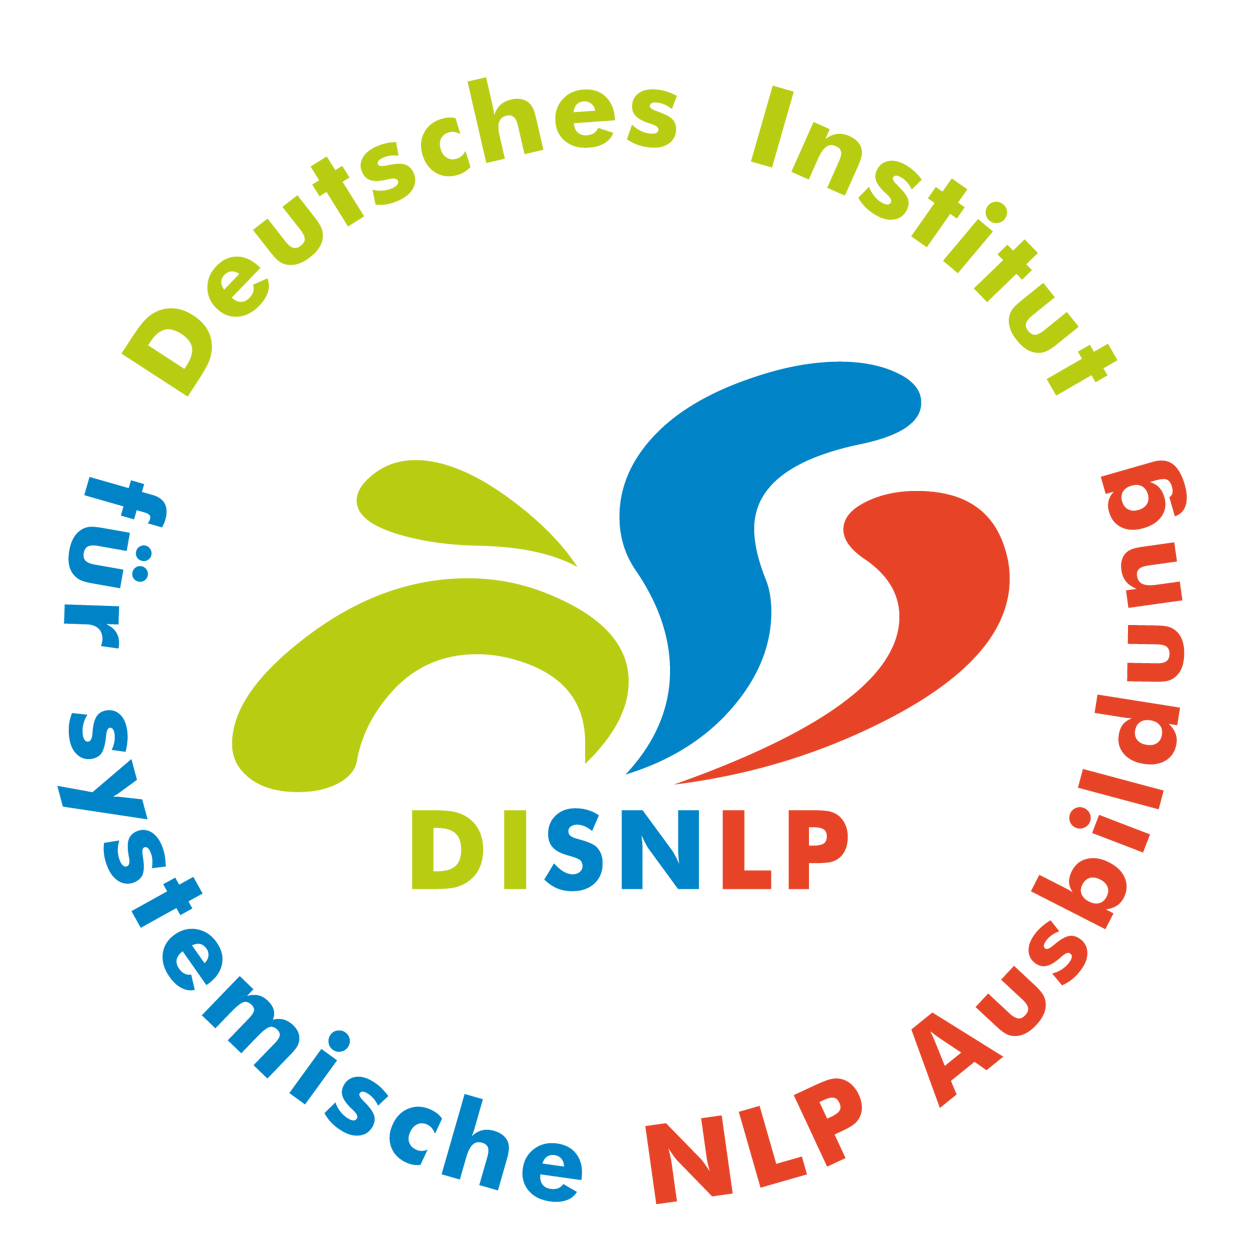 Seminar Selbstbewusstsein, Selbstvertrauen, Selbstwert, Selbstsicherheit stärken Mannheim Neckar mit NLP Coaching Kurs für mehr Selbstbewusstsein